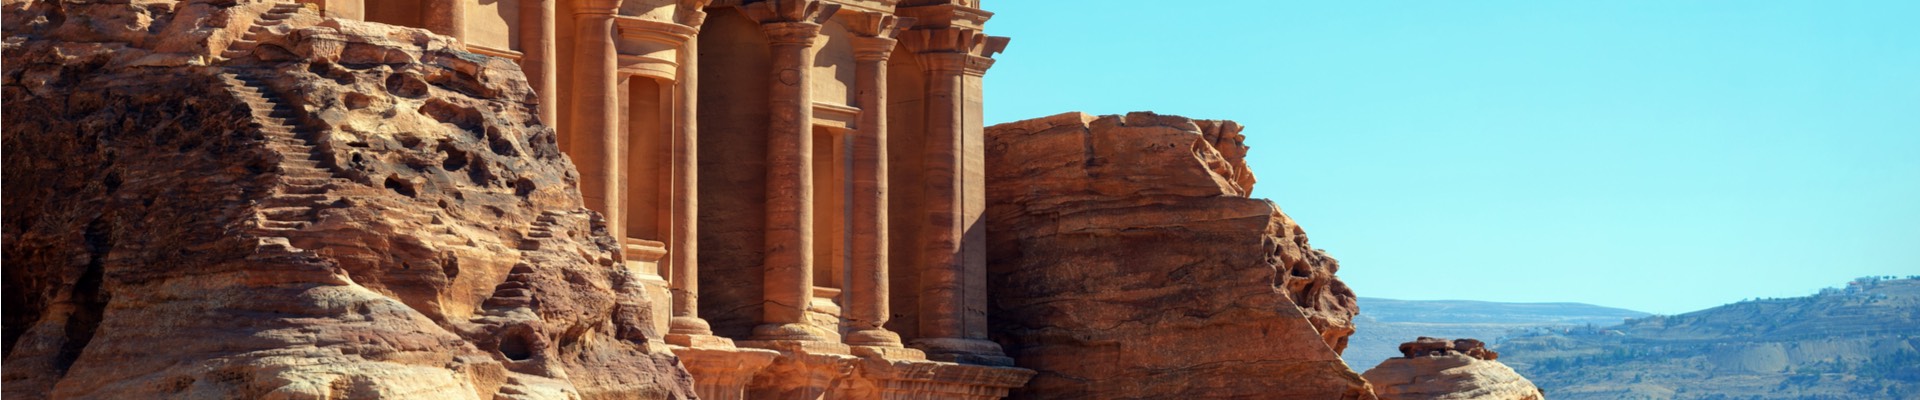 Viaje Privado a Israel y Petra en 9 días